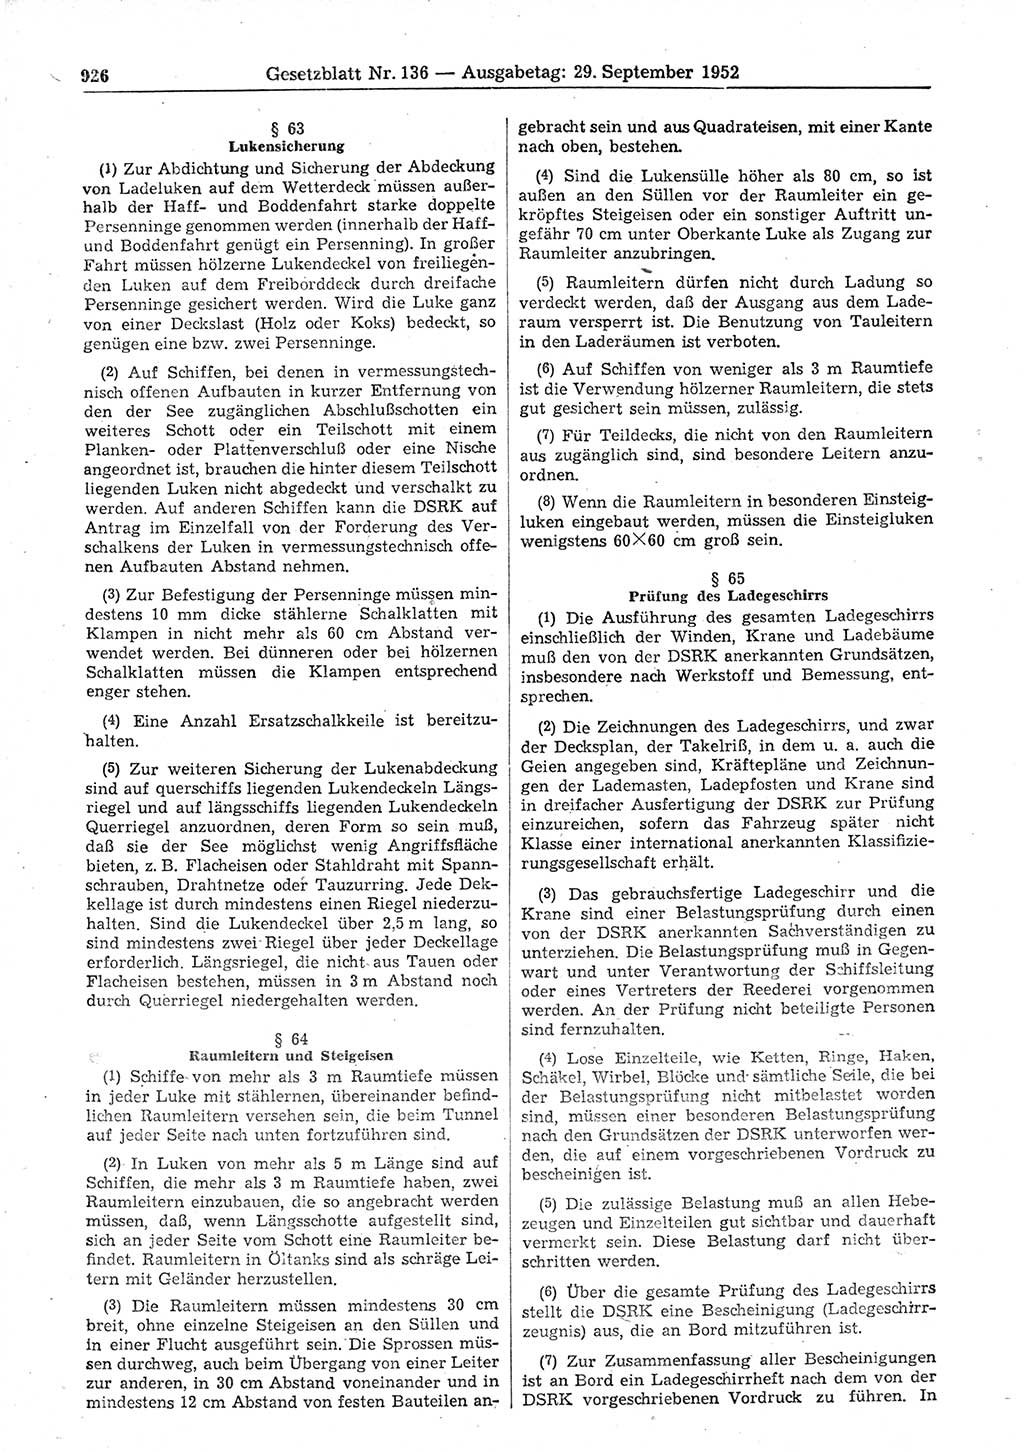 Gesetzblatt (GBl.) der Deutschen Demokratischen Republik (DDR) 1952, Seite 926 (GBl. DDR 1952, S. 926)